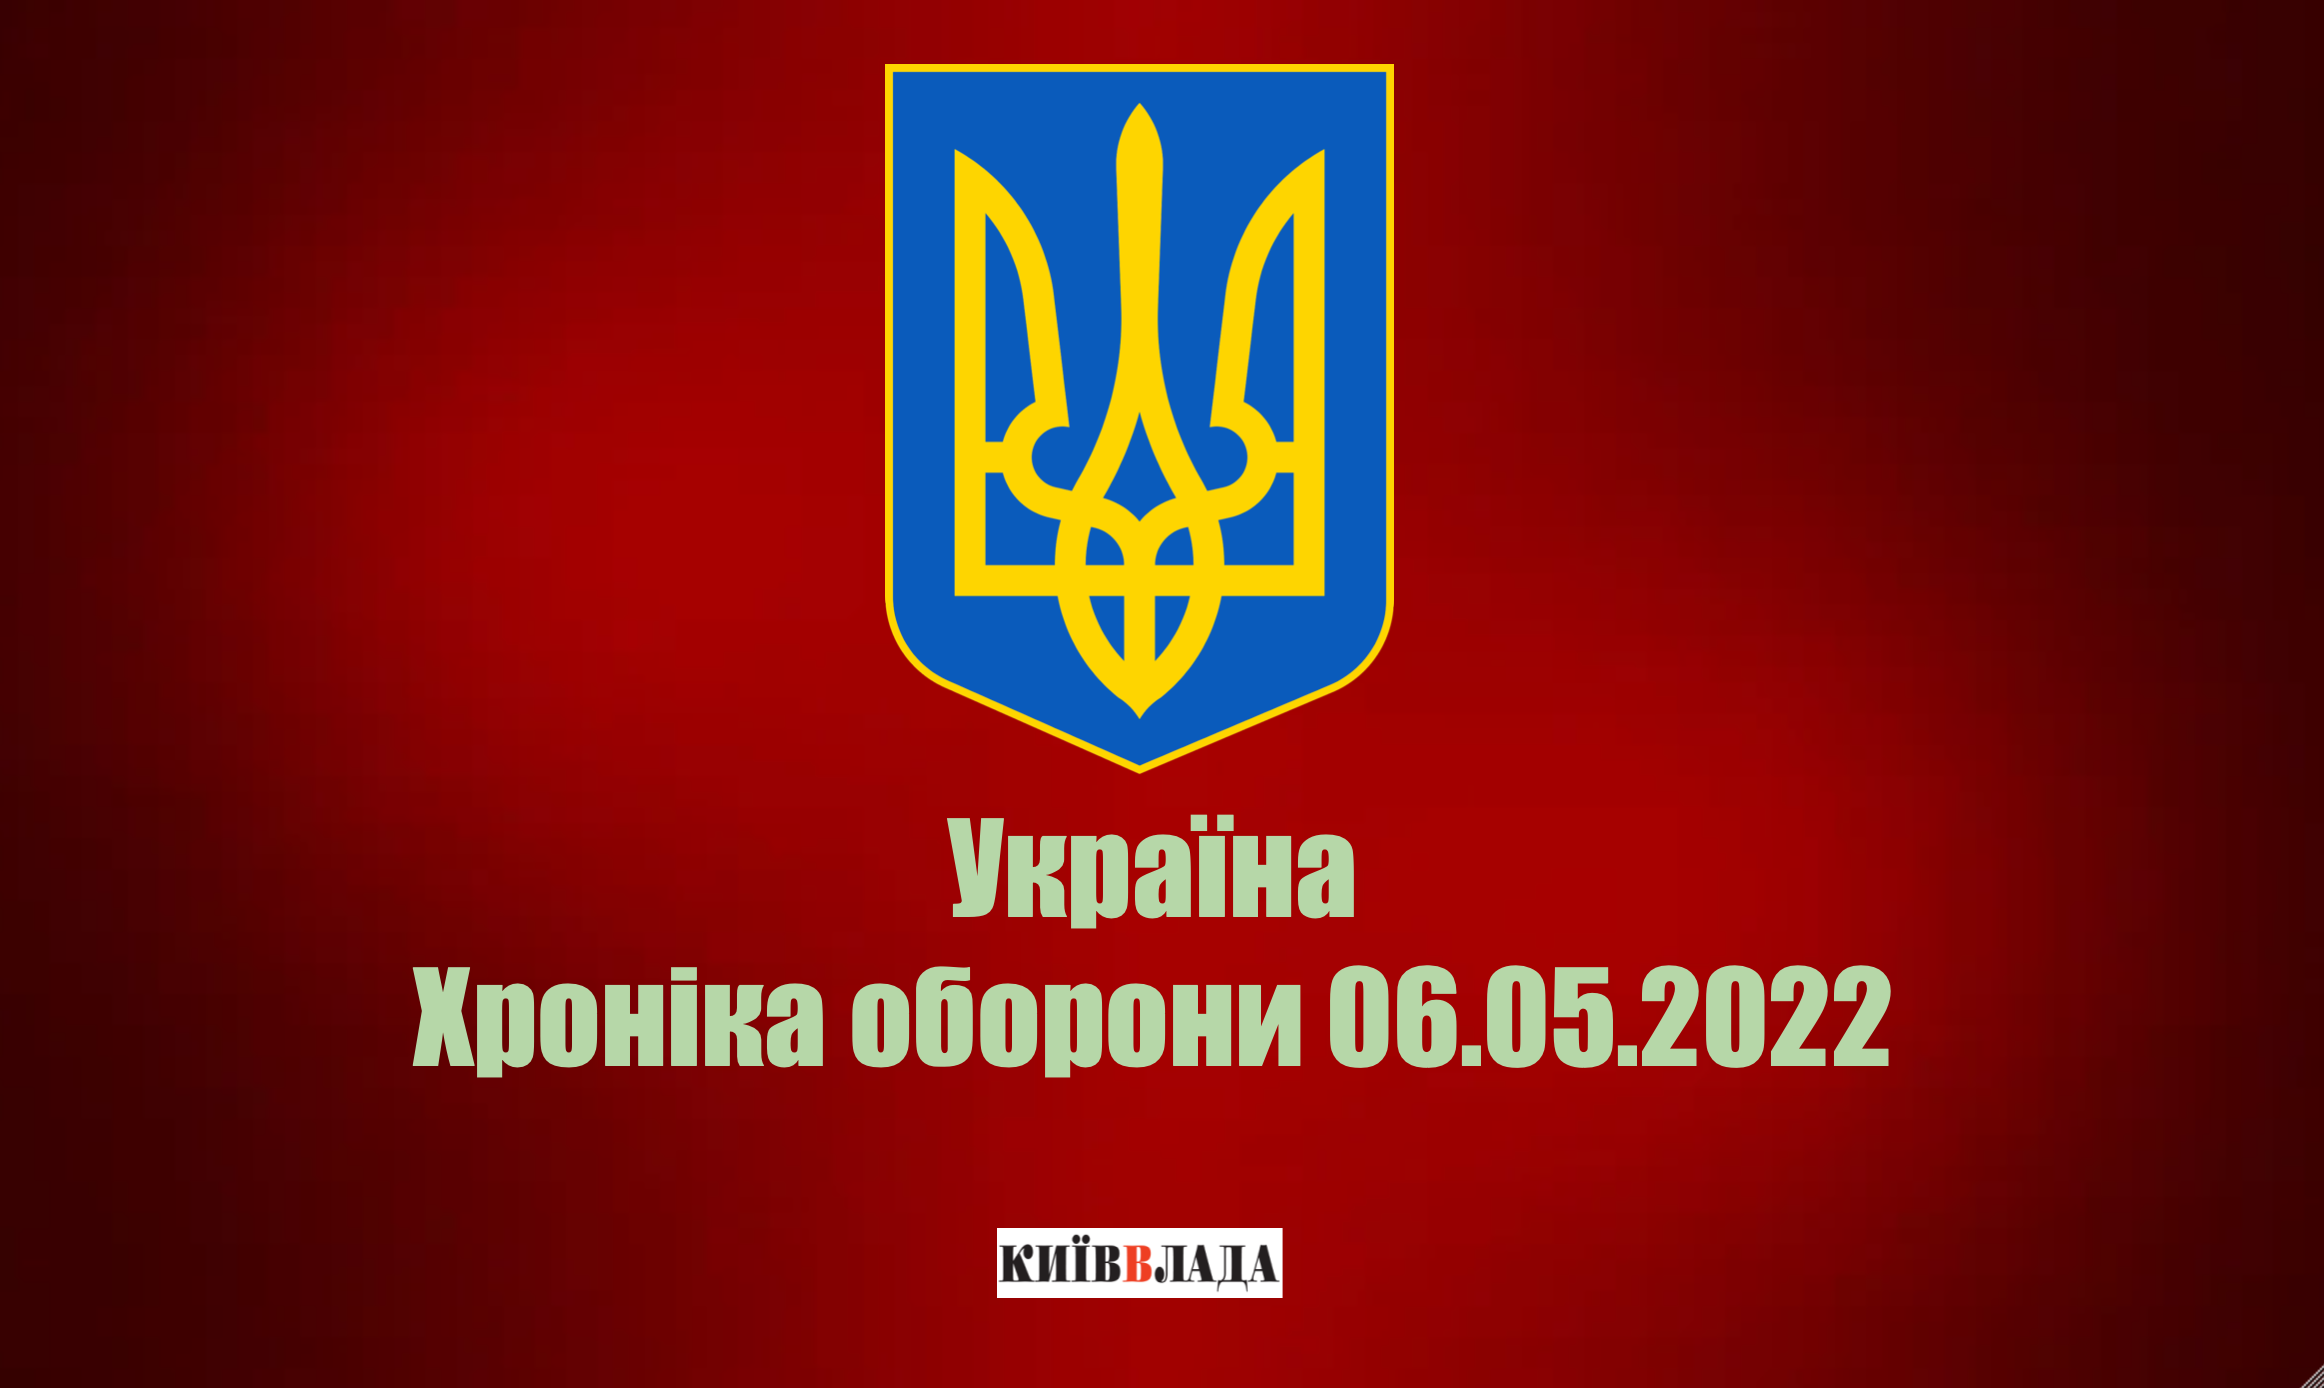 Армія рашистів втратила в Україні 1 110 танків та майже 25 тисяч вояків, - Генштаб ЗСУ